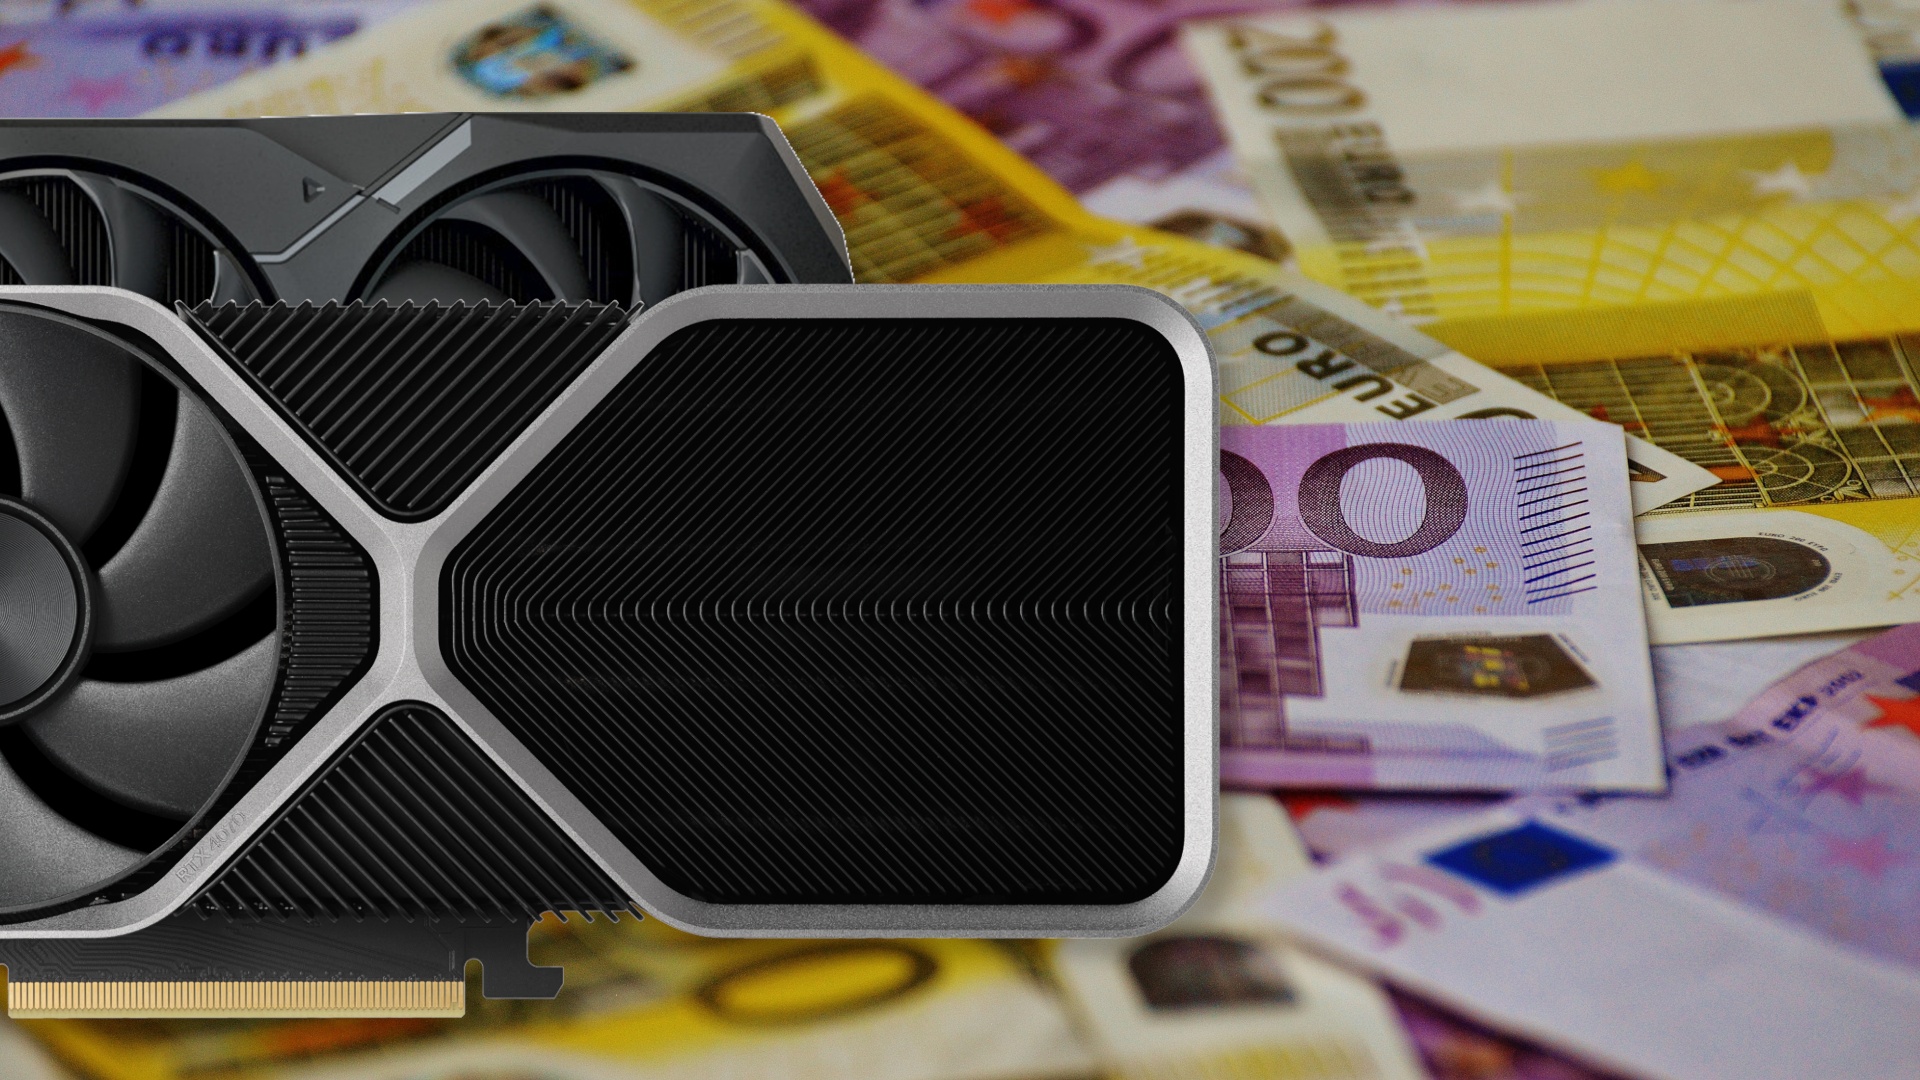 #Preissturz bei Grafikkarten: Ist jetzt der richtige Zeitpunkt, eine neue GPU von Nvidia oder AMD zu kaufen?